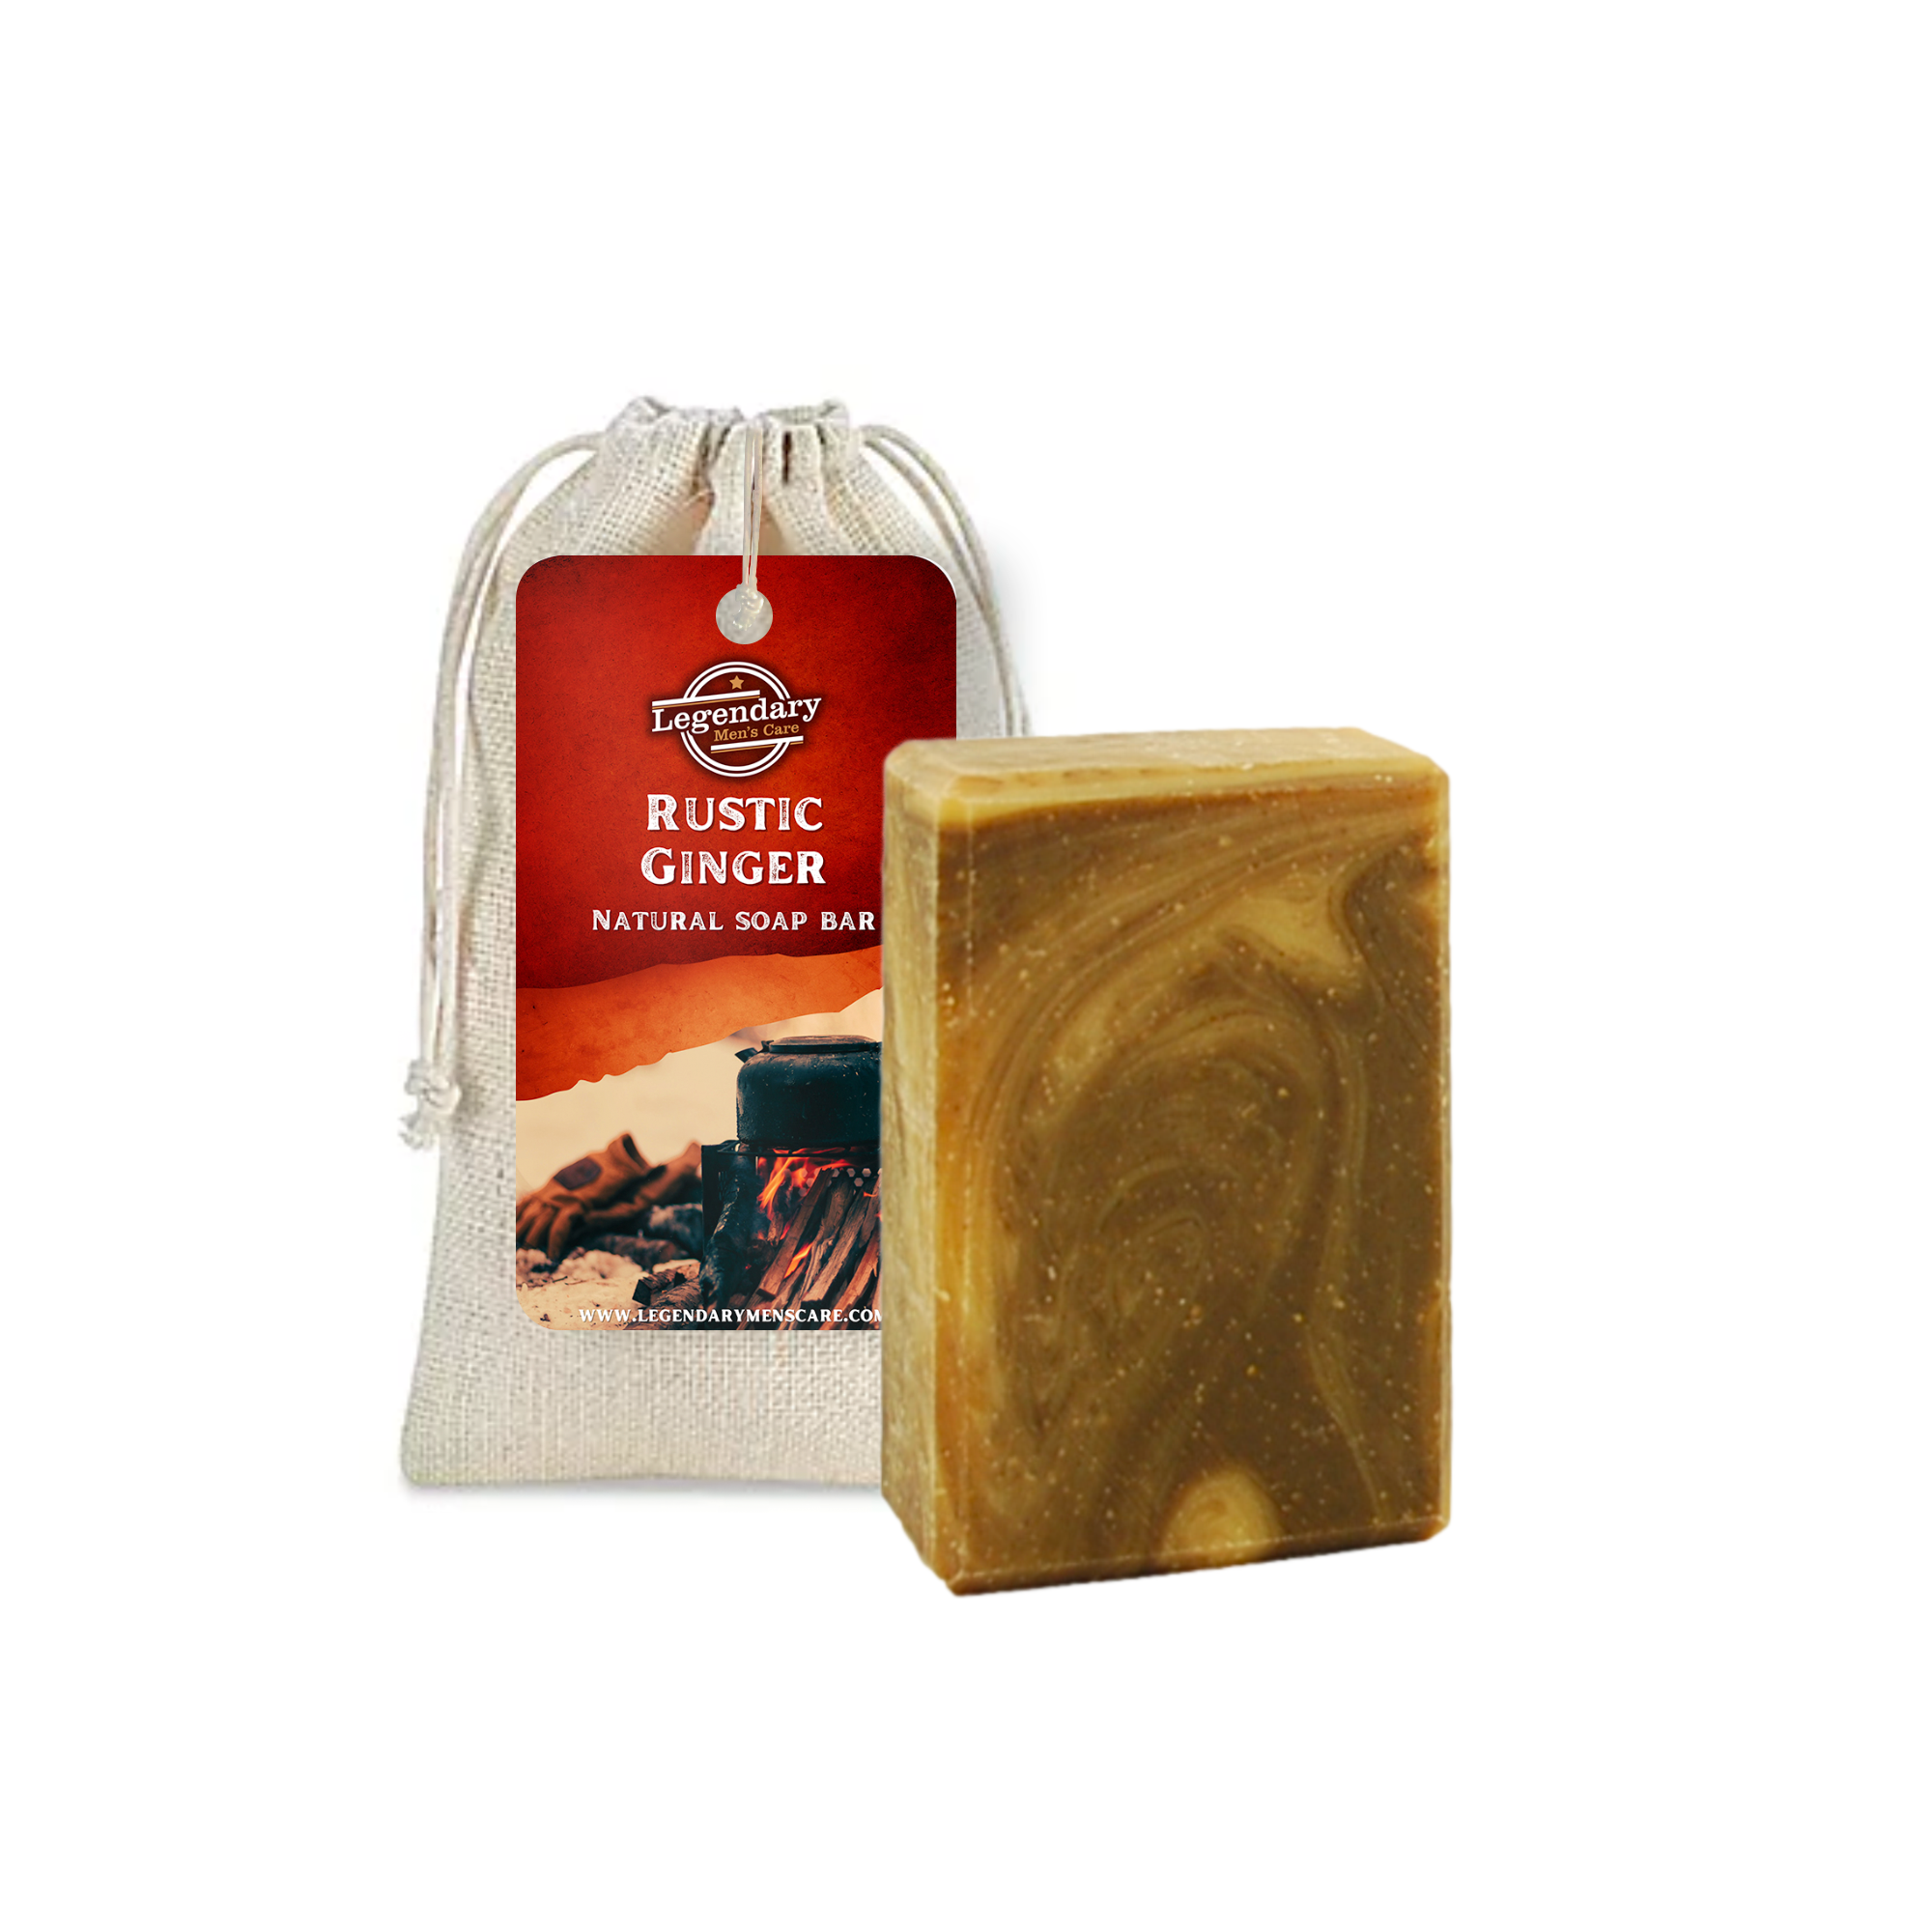 Rustic Ginger Soap Bar